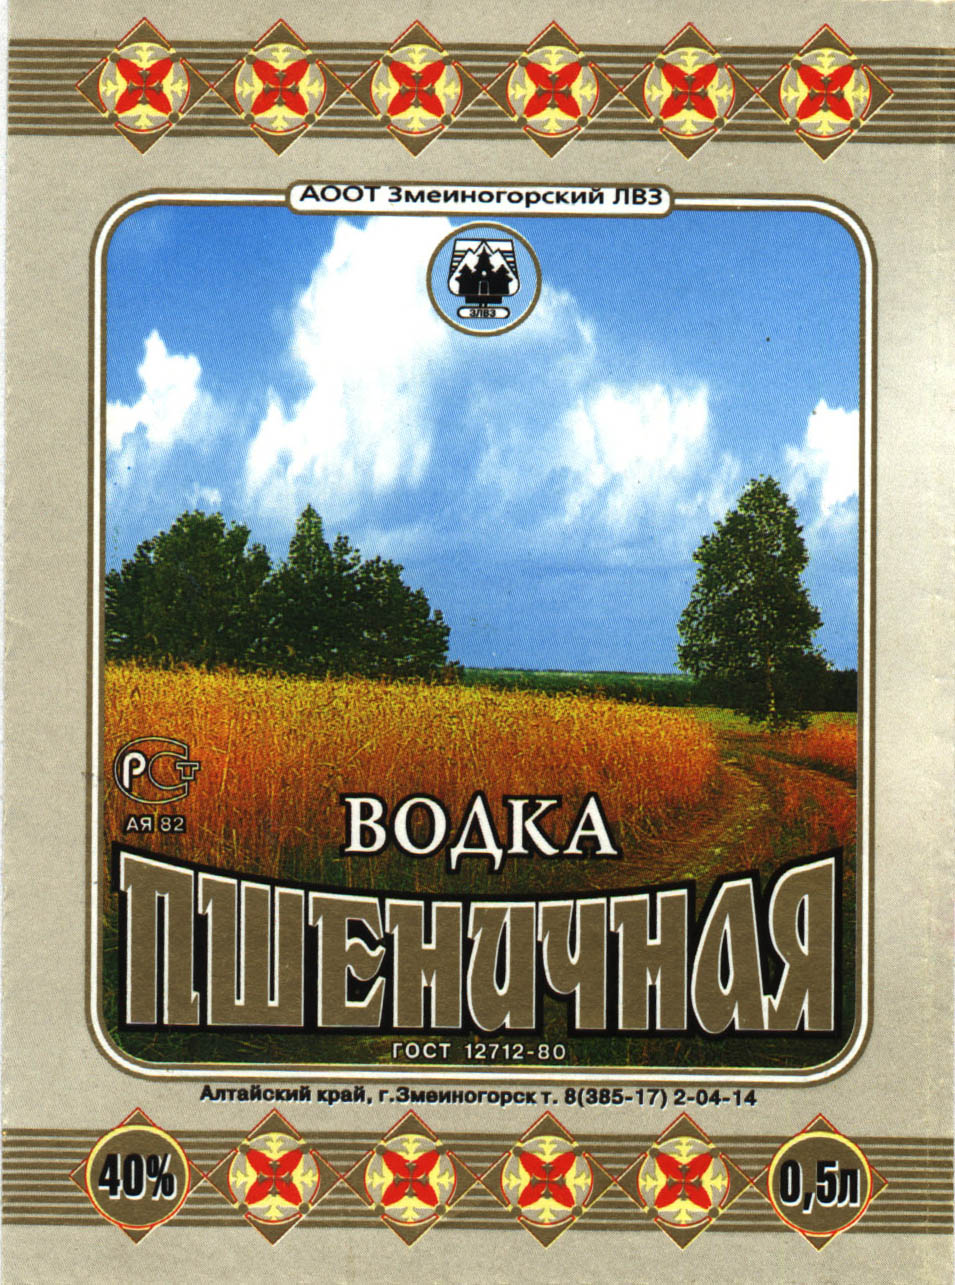 Этикетки Советской пшеничной водки